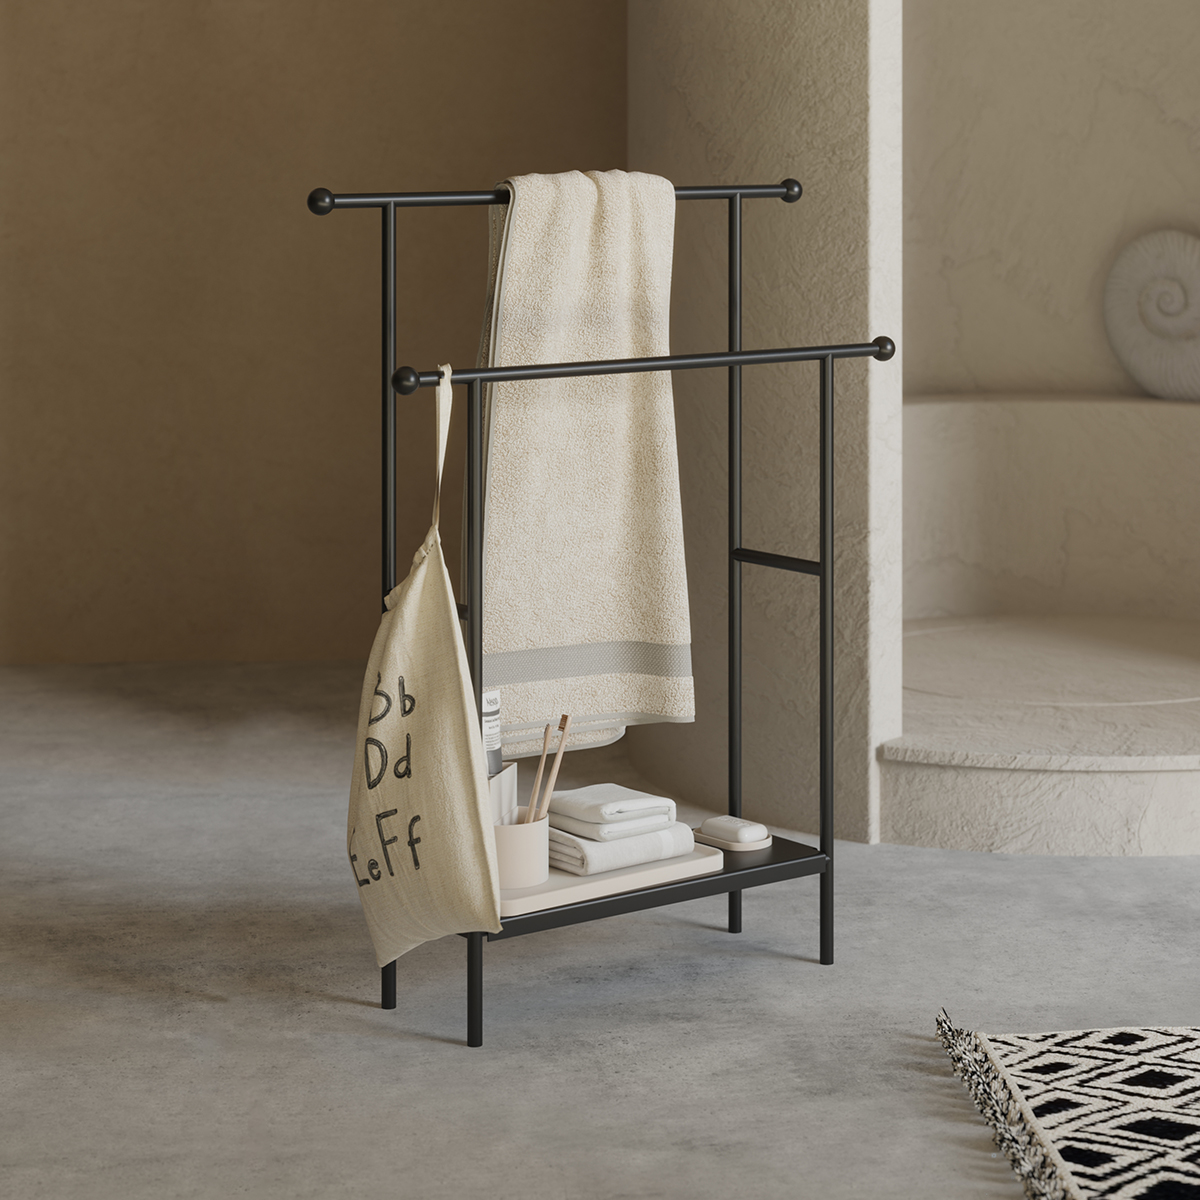 北欧风家用卫生间落地式浴缸边毛巾架浴巾架可移动多X功能置物架